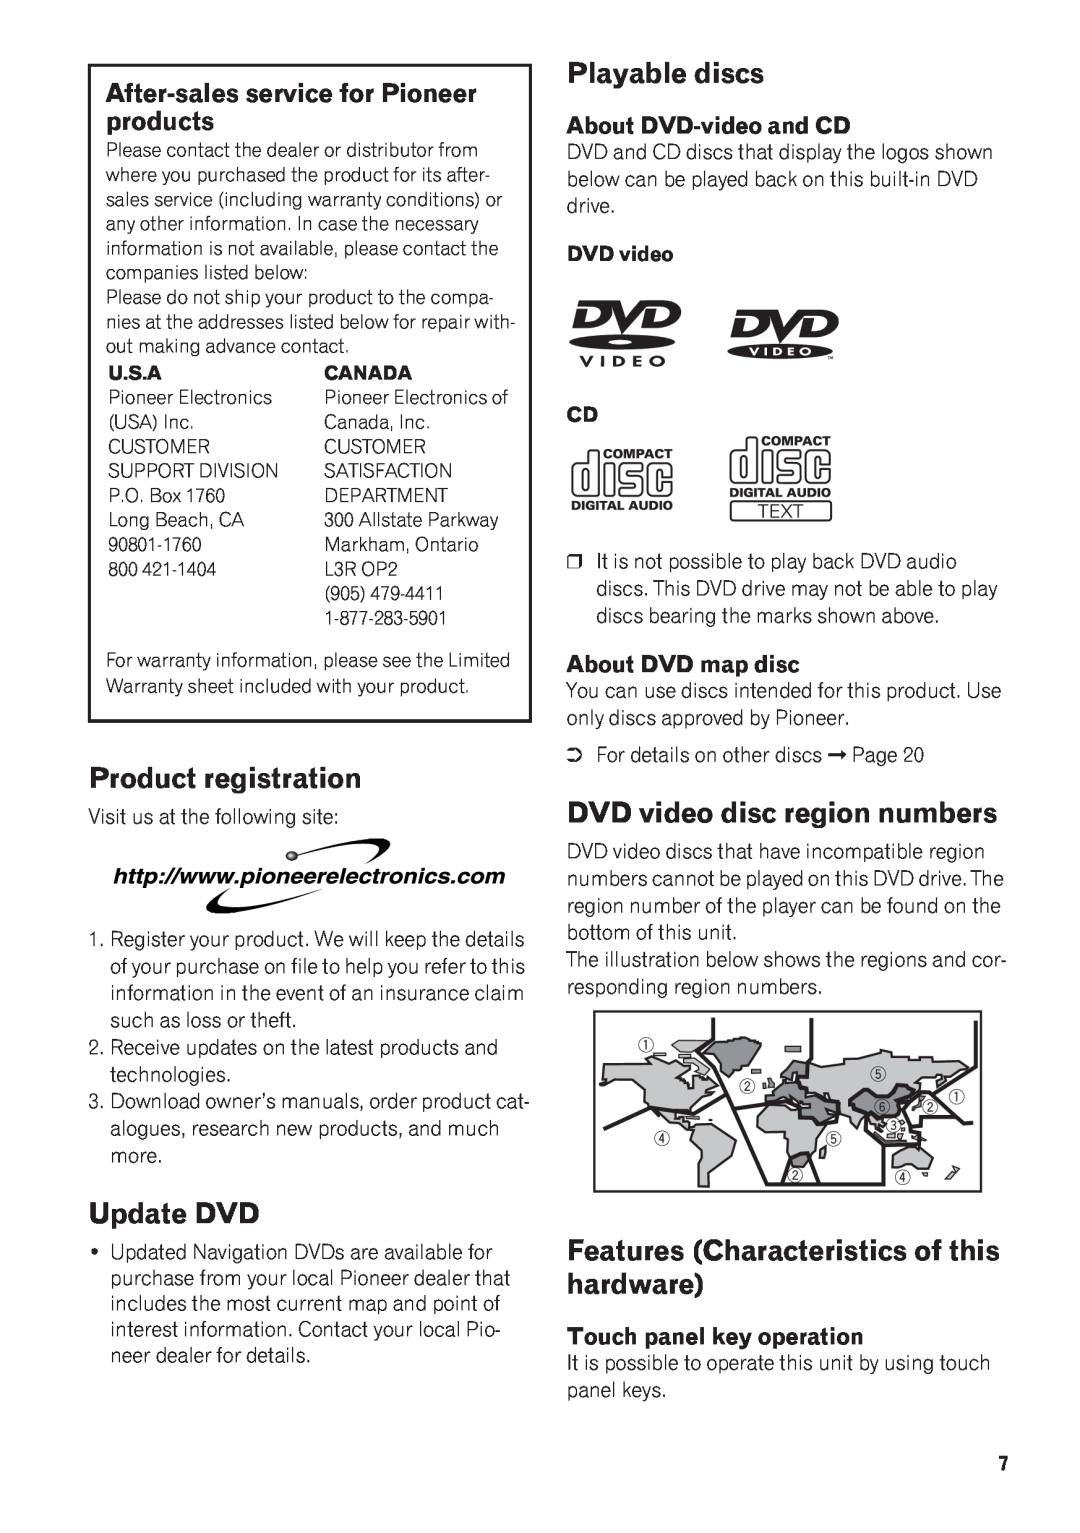 Pioneer AVIC-N1 manual Product registration, Playable discs, DVD video disc region numbers, Update DVD 